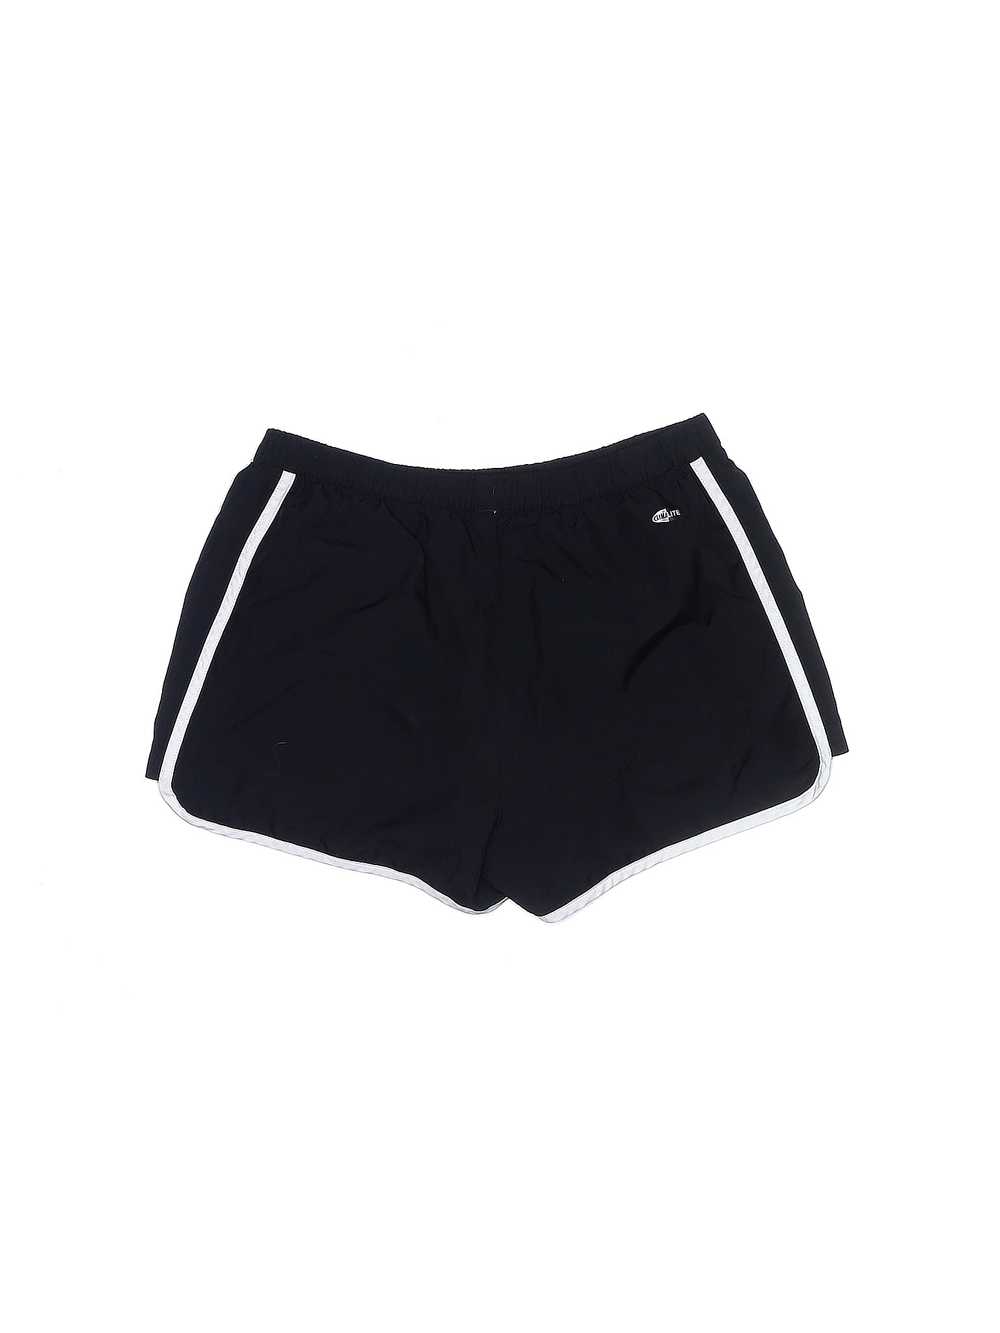 Adidas Women Black Athletic Shorts M - image 2